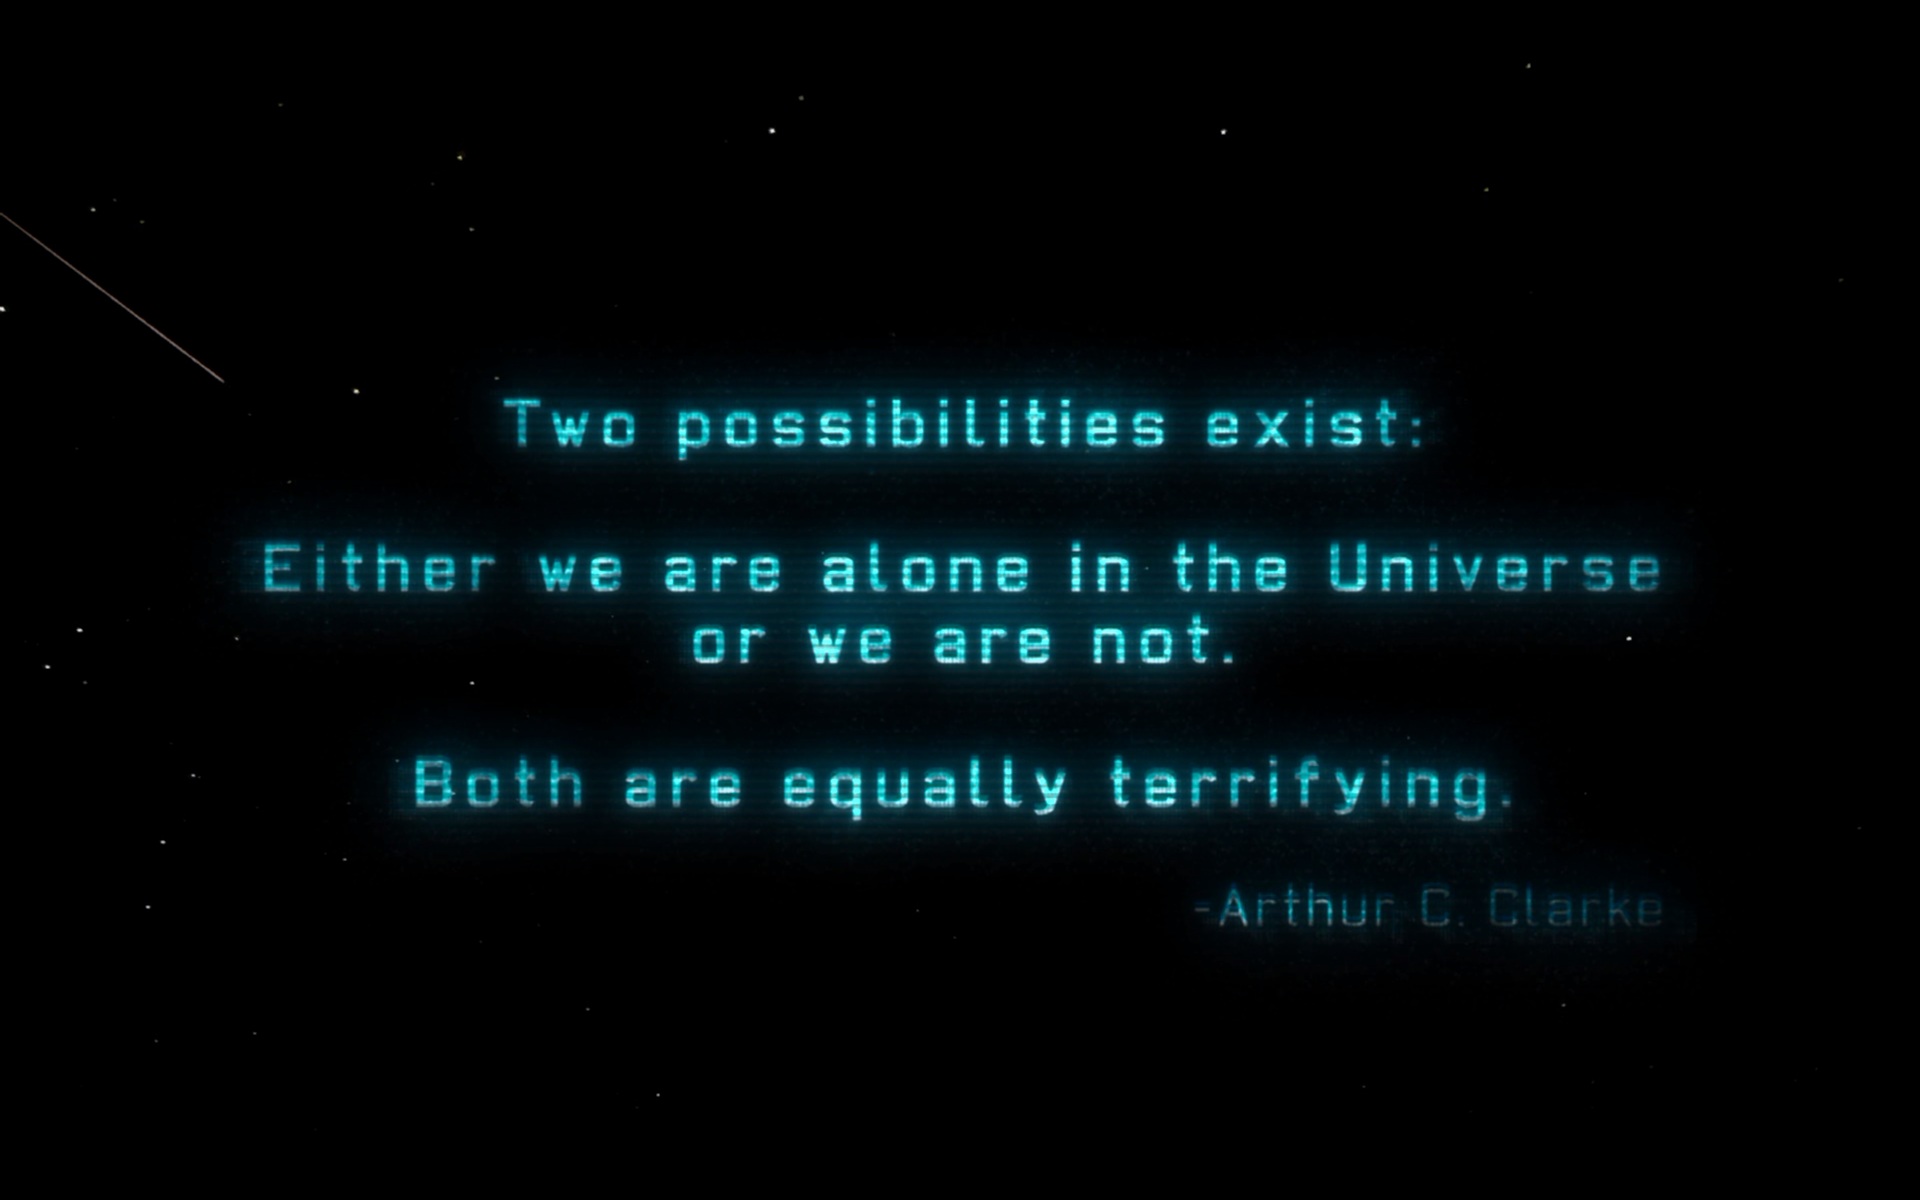 Arthur C. Clarke's quote #4